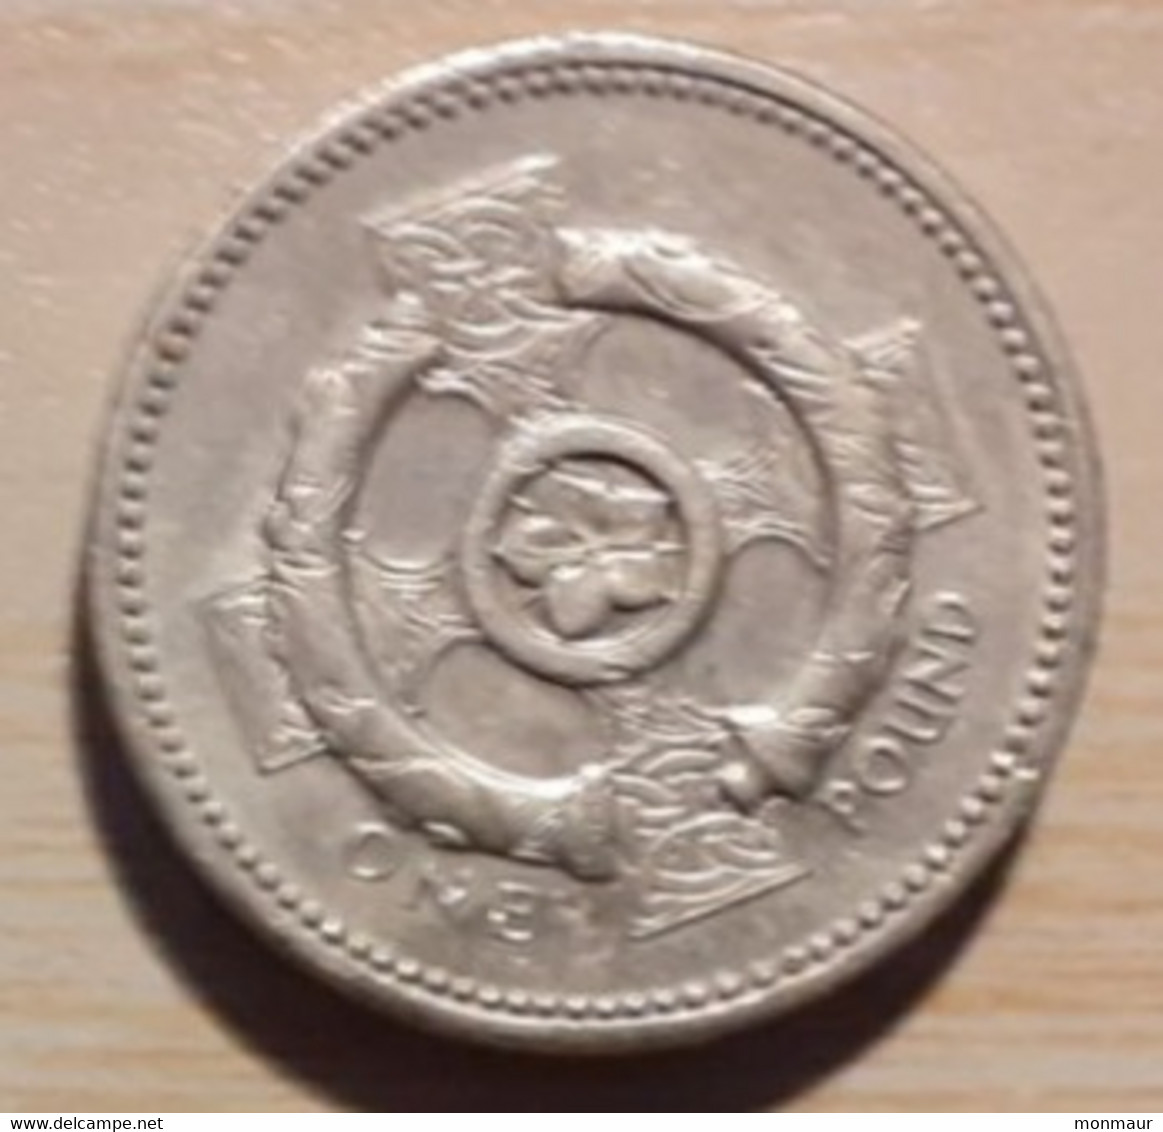 GRAN BRETAGNA 1 POUND 1996 - 1 Pound